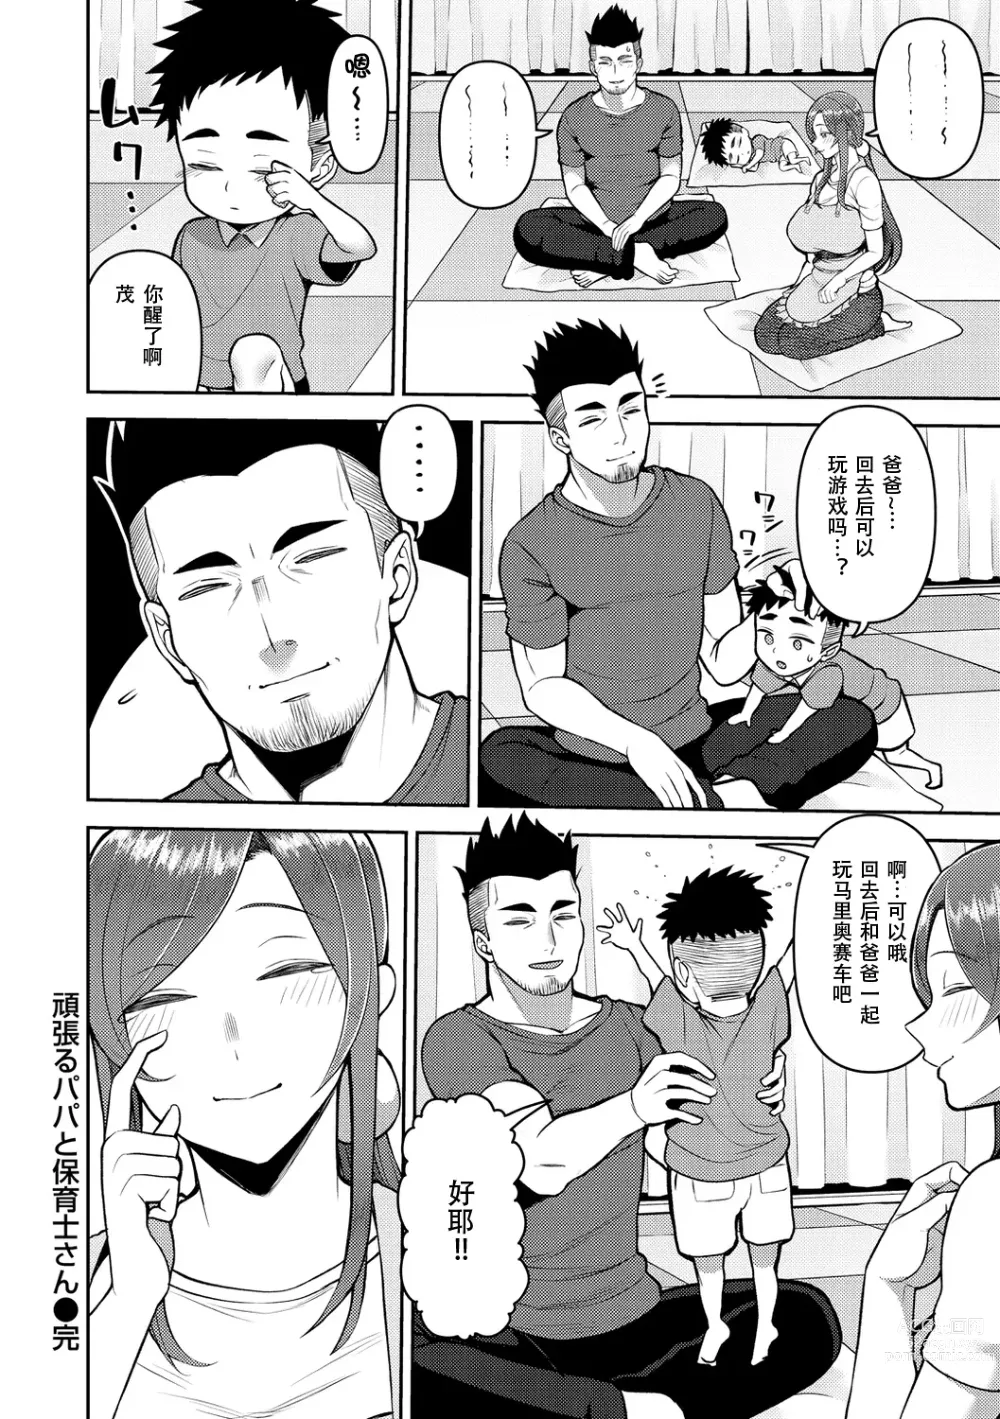 Page 24 of manga Amaete Hoshii no - I want you to spoil me